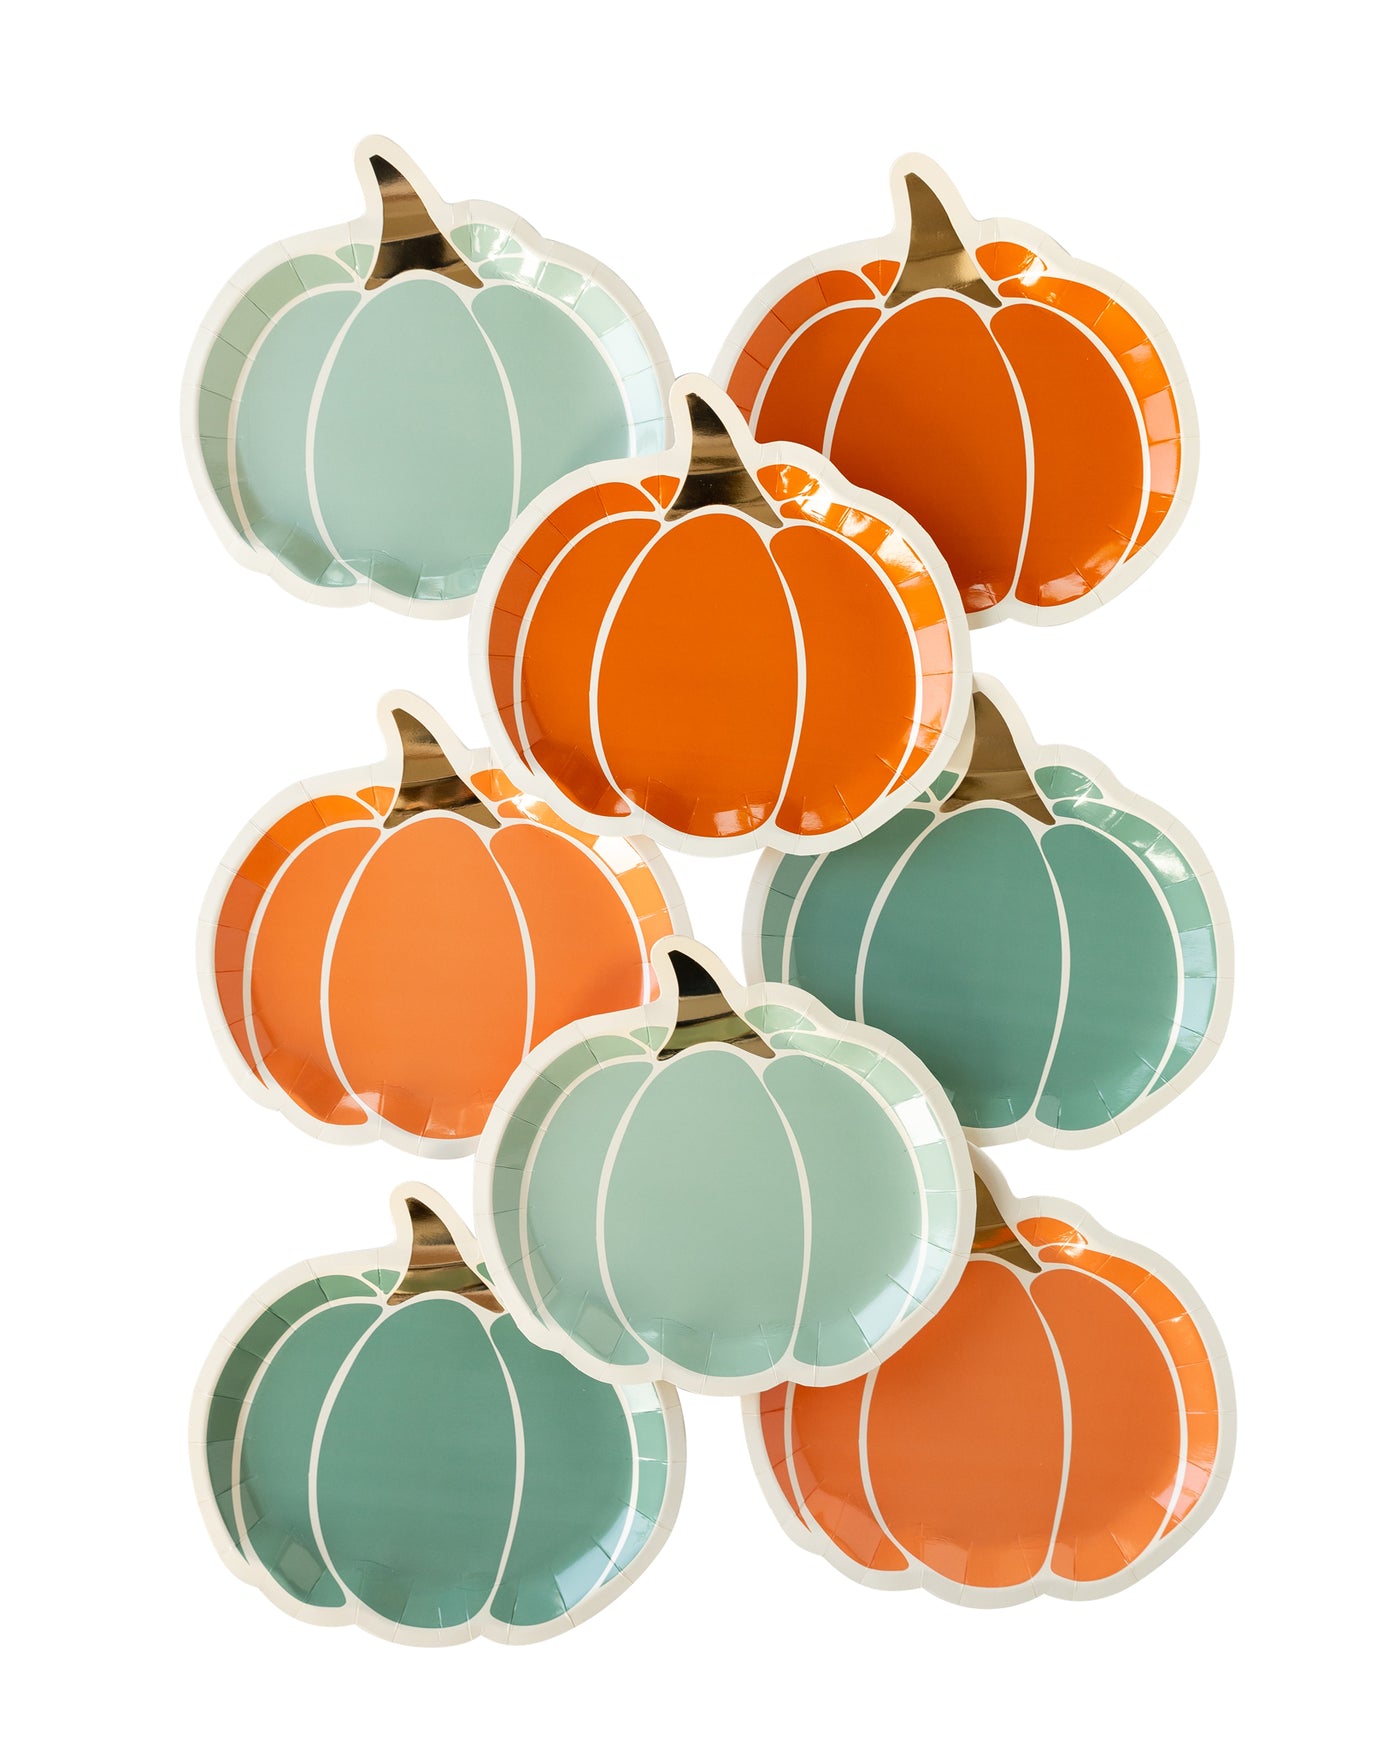 PLTS343C - Colorful Pumpkin Shaped Plates Set